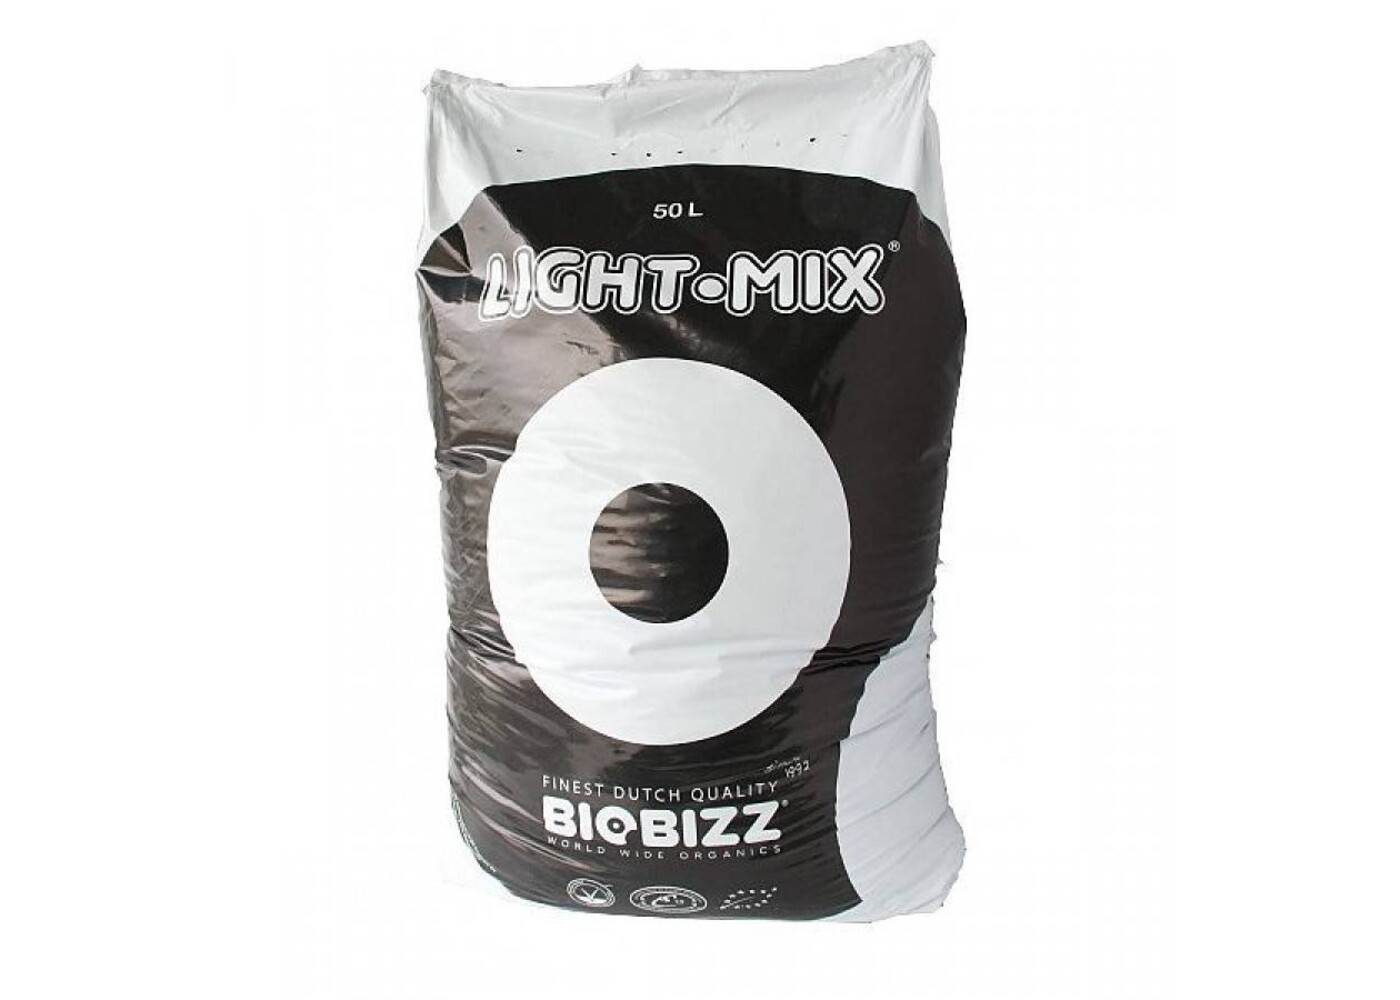 BioBizz Biobizz Light Mix